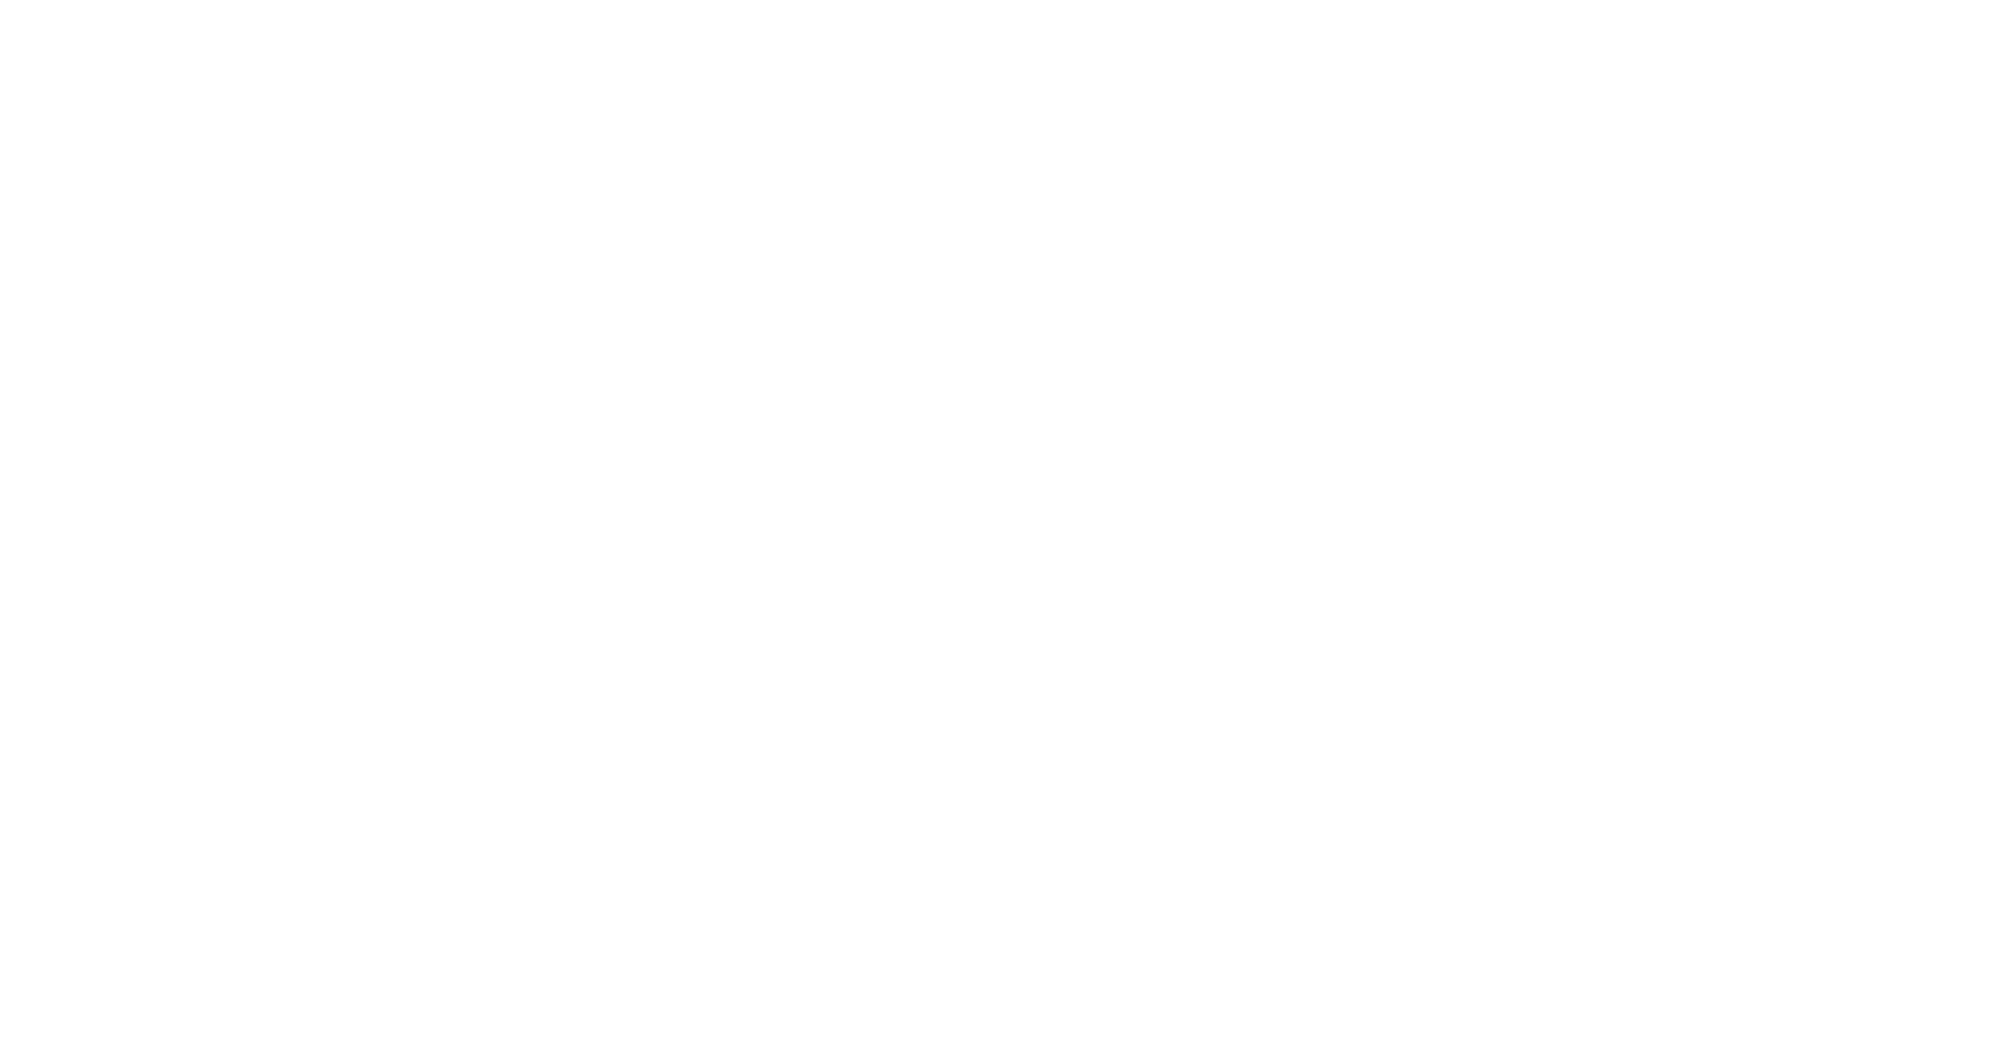 https://www.saastock.com/wp-content/uploads/2021/09/Freshworks-Logo-1.png